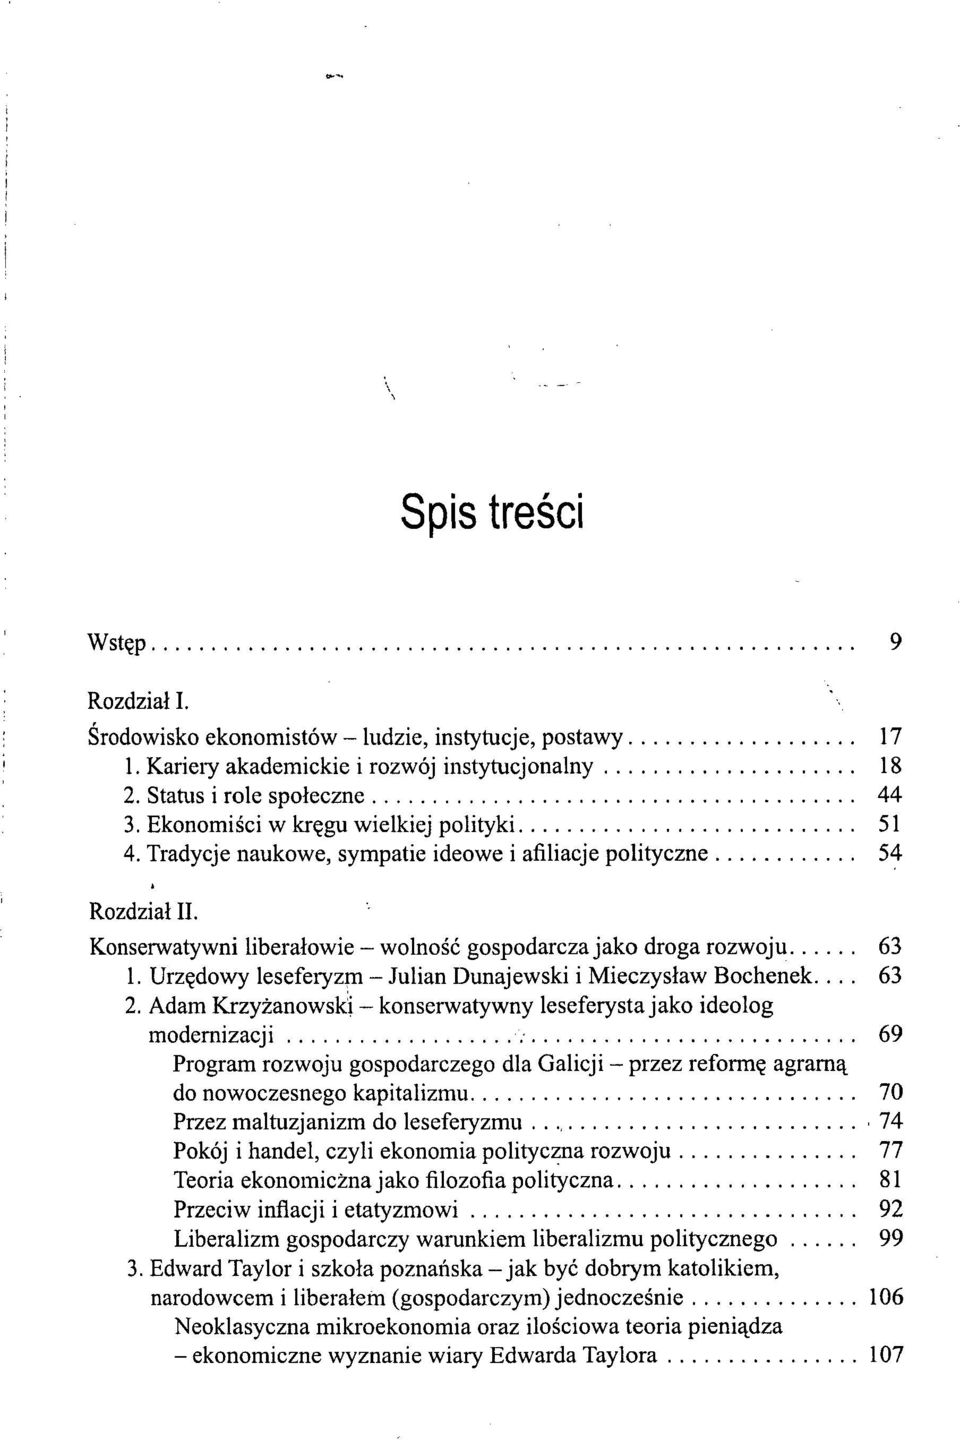 Urzędowy leseferyzm - Julian Dunajewski i Mieczysław Bochenek.... 63 2.